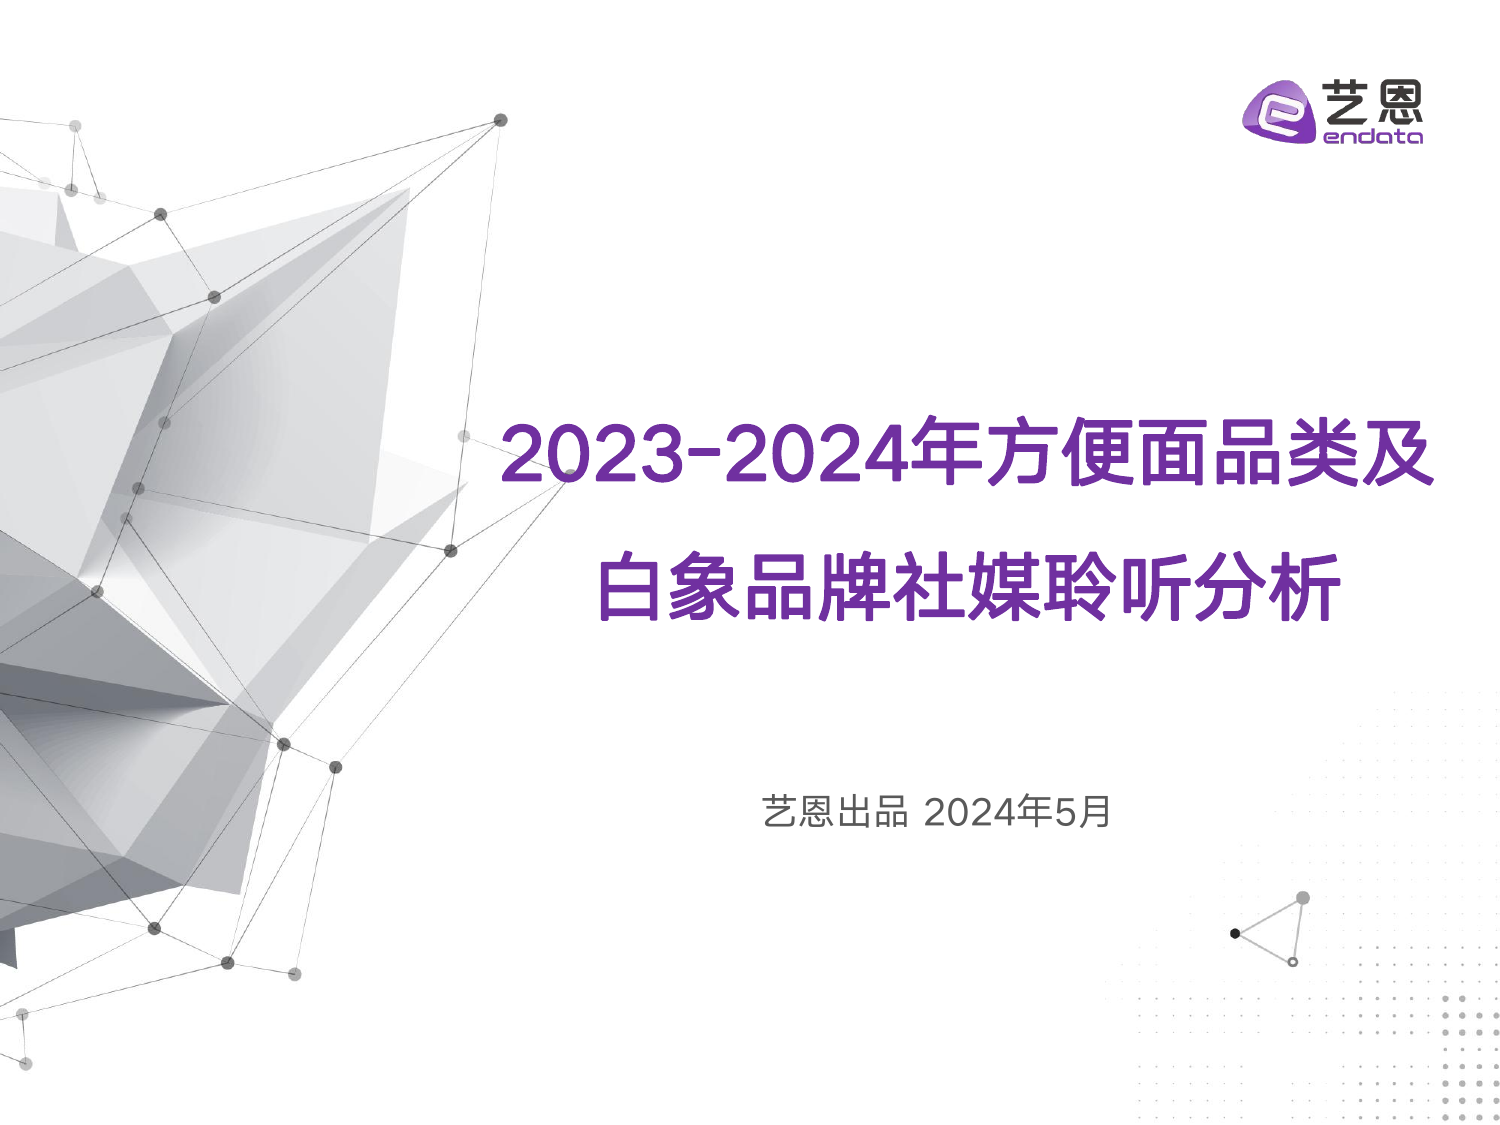 2023-2024年方便面品类及白象品牌社媒聆听分析-艺恩-202405.pdf